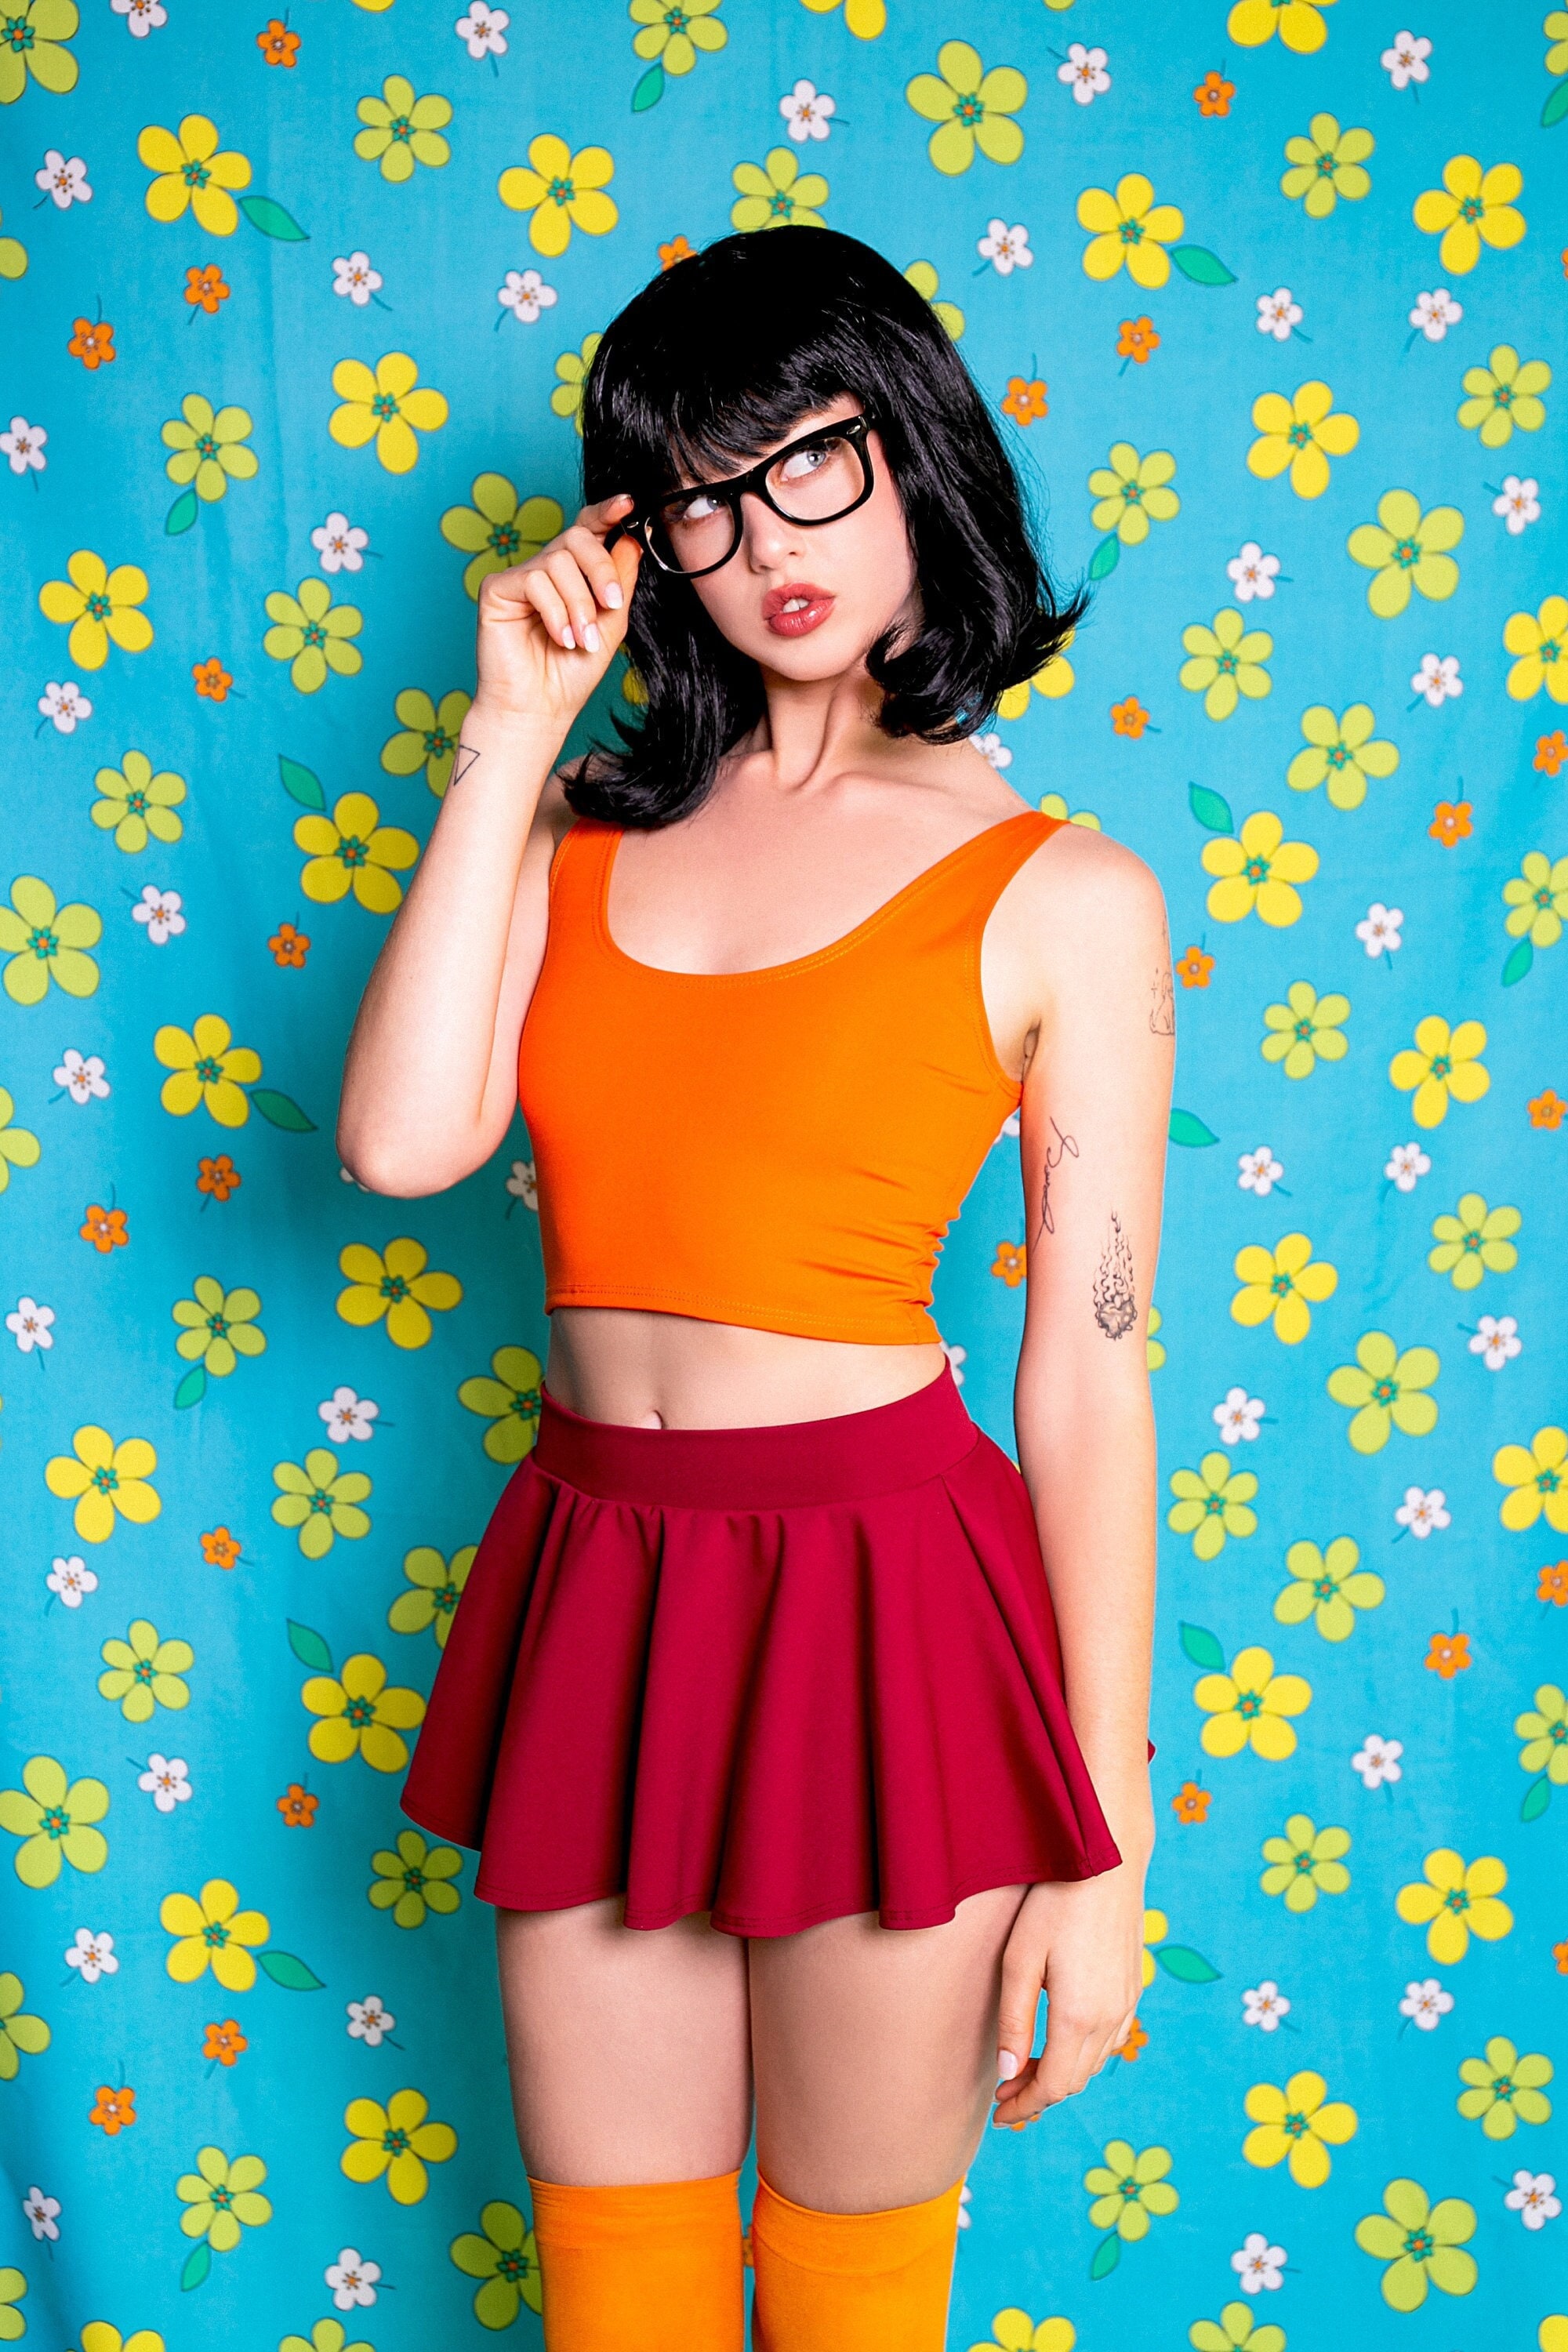 Scooby Doo Velma Daphne Deluxe STD Size Ladies Costume